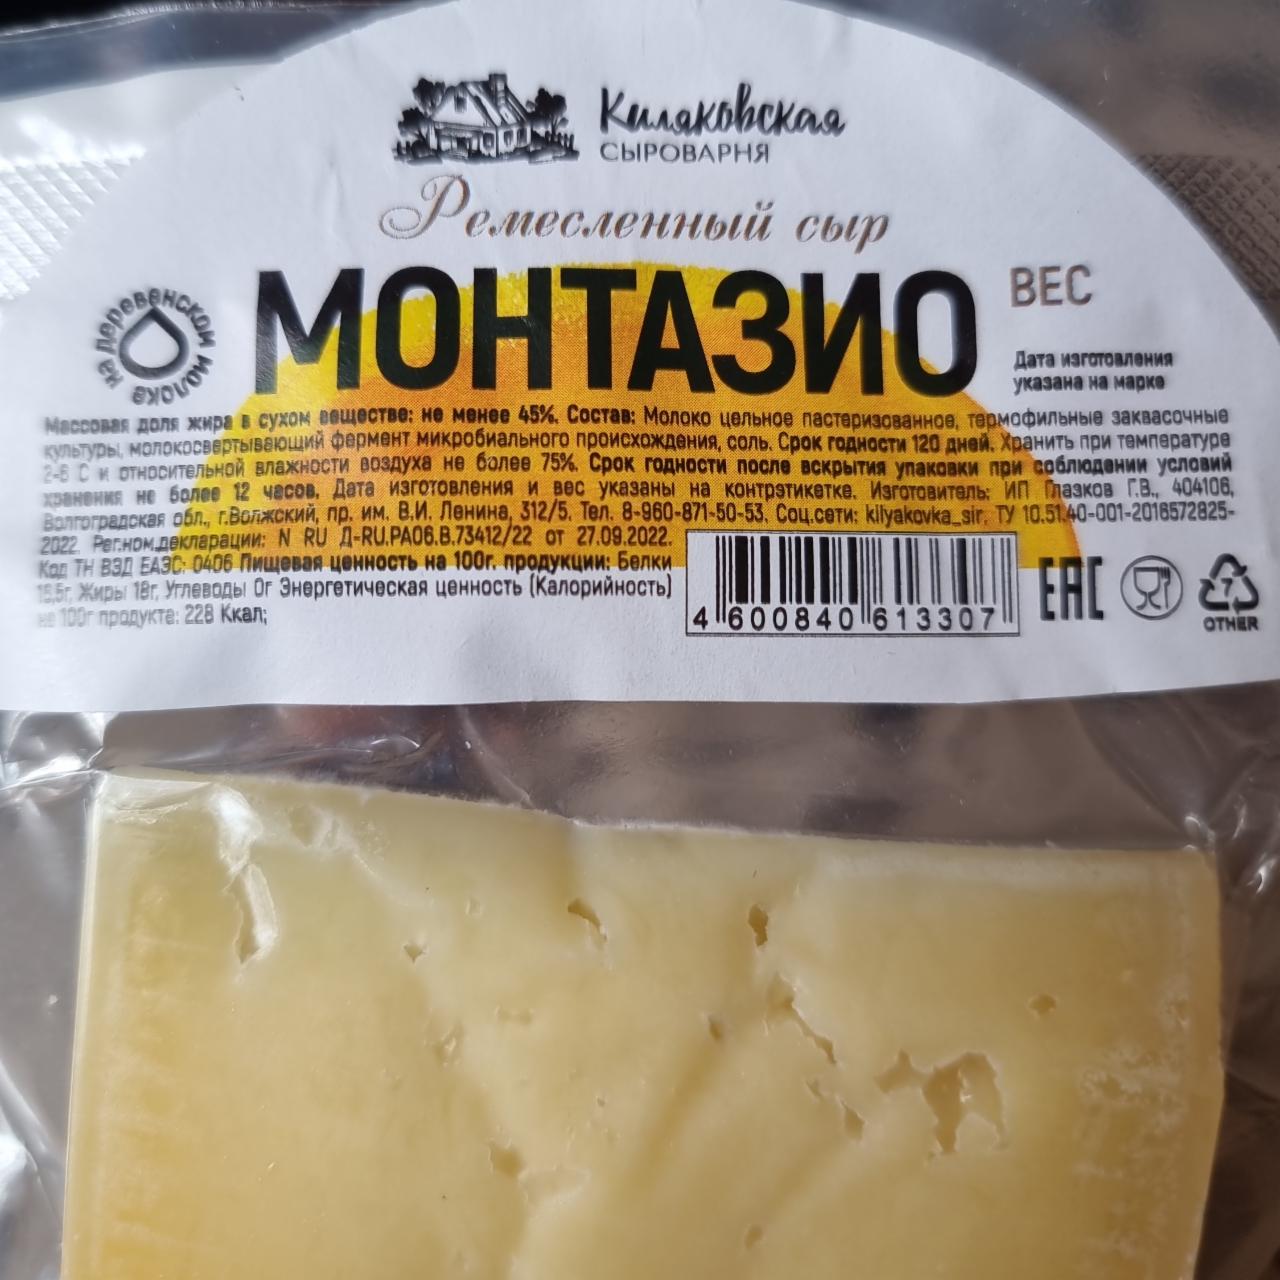 Фото - Ремесленный сыр Монтазио Киляковская сыроварня